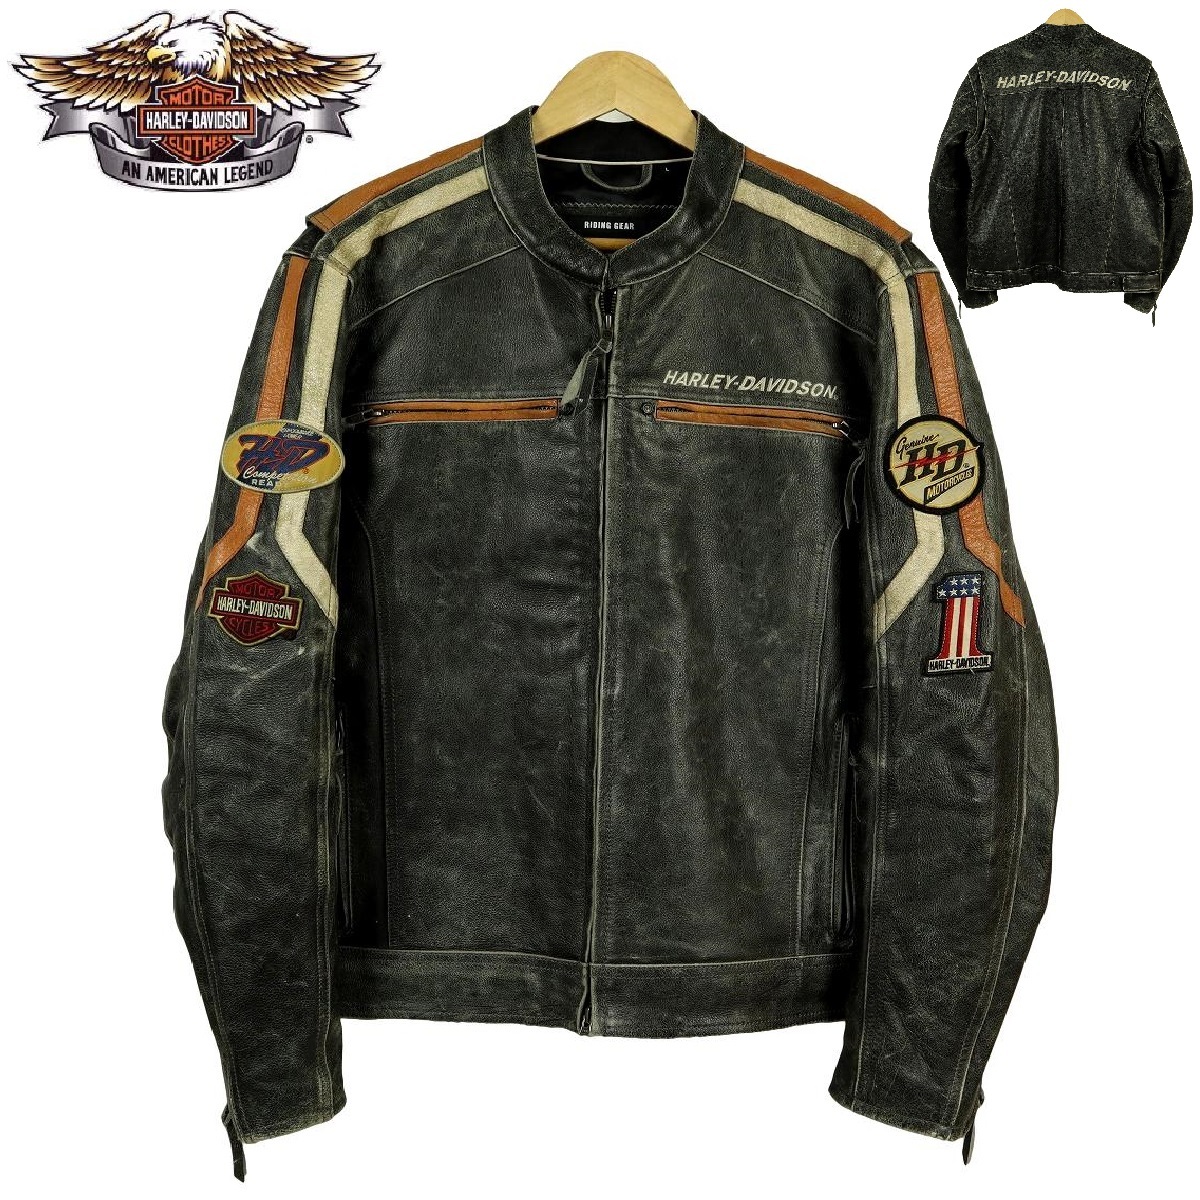 [S1231][ превосходный товар ][USED обработка ]HARLEY-DAVIDSON Harley Davidson одиночный байкерская куртка кожаный жакет мотоциклетная экипировка 